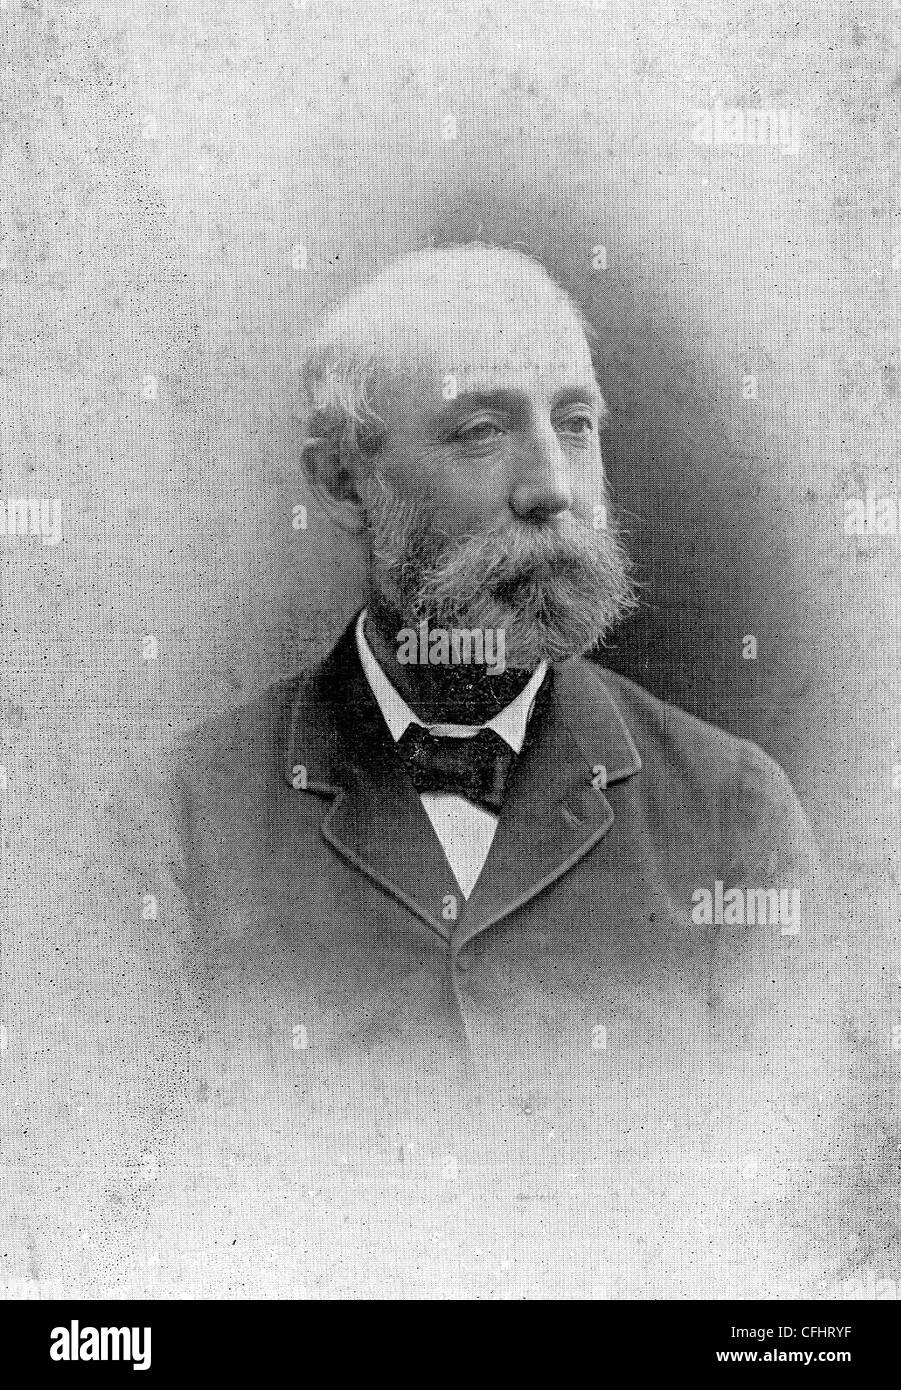 Alfred Hickman, industrieller und MP, 1900. Stockfoto